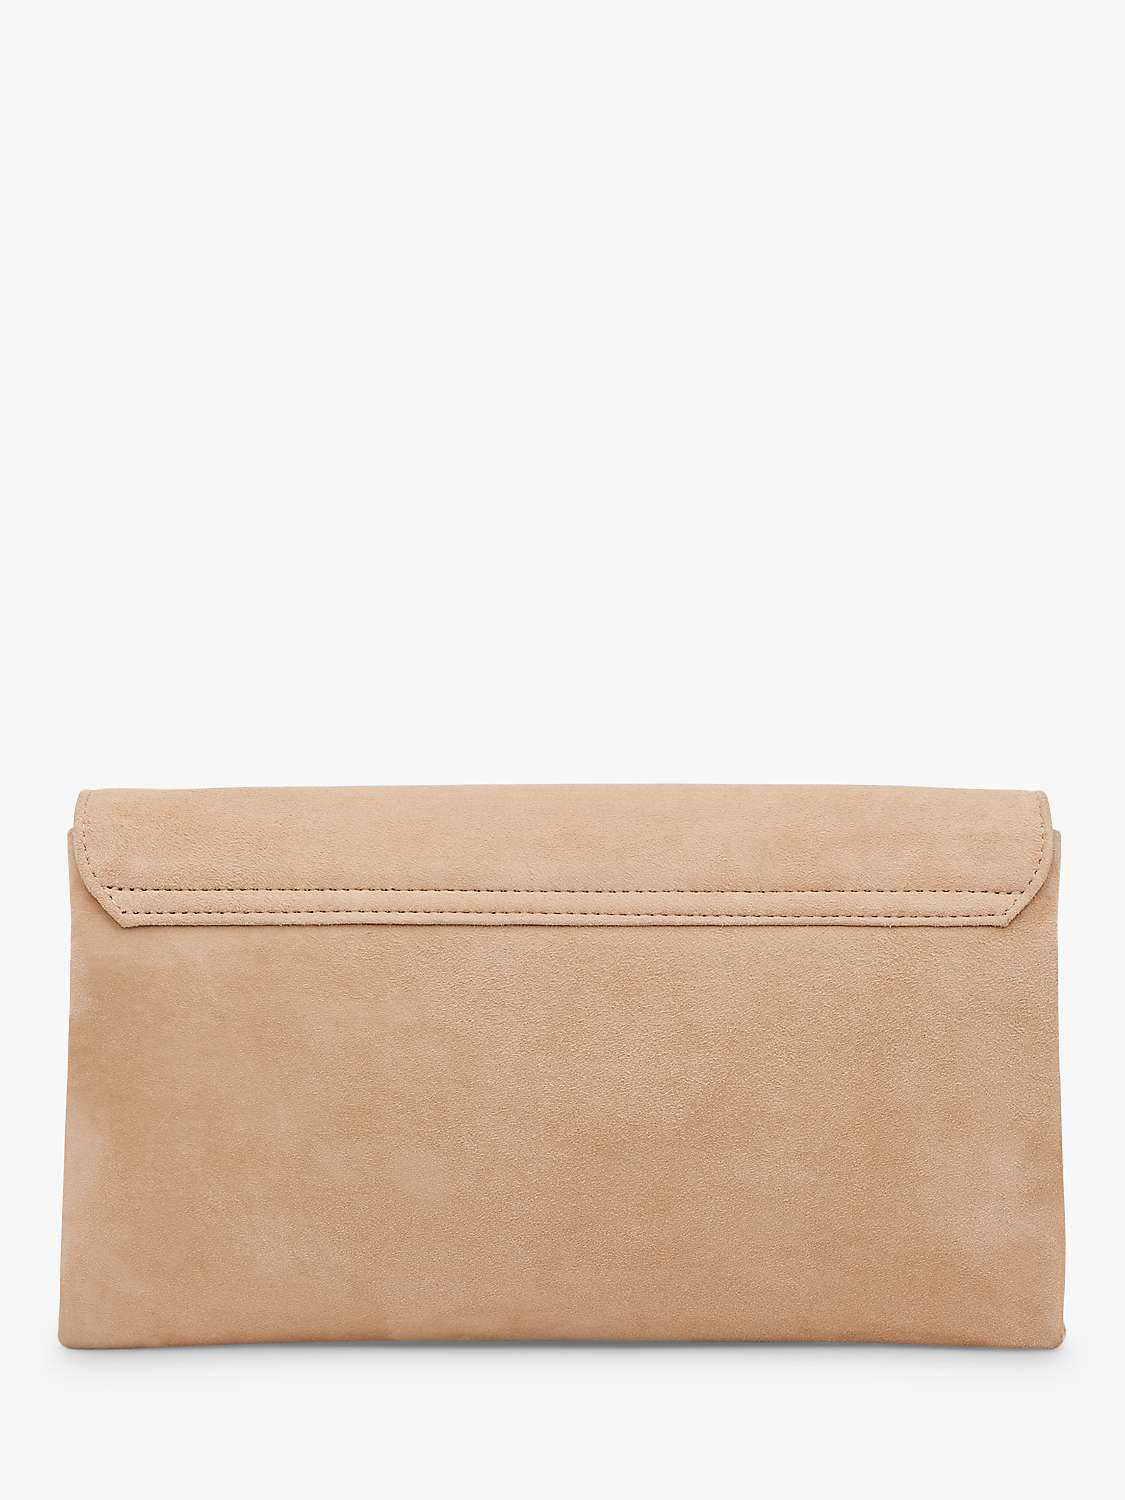 Buy L.K.Bennett Dora Leather Clutch Bag Online at johnlewis.com